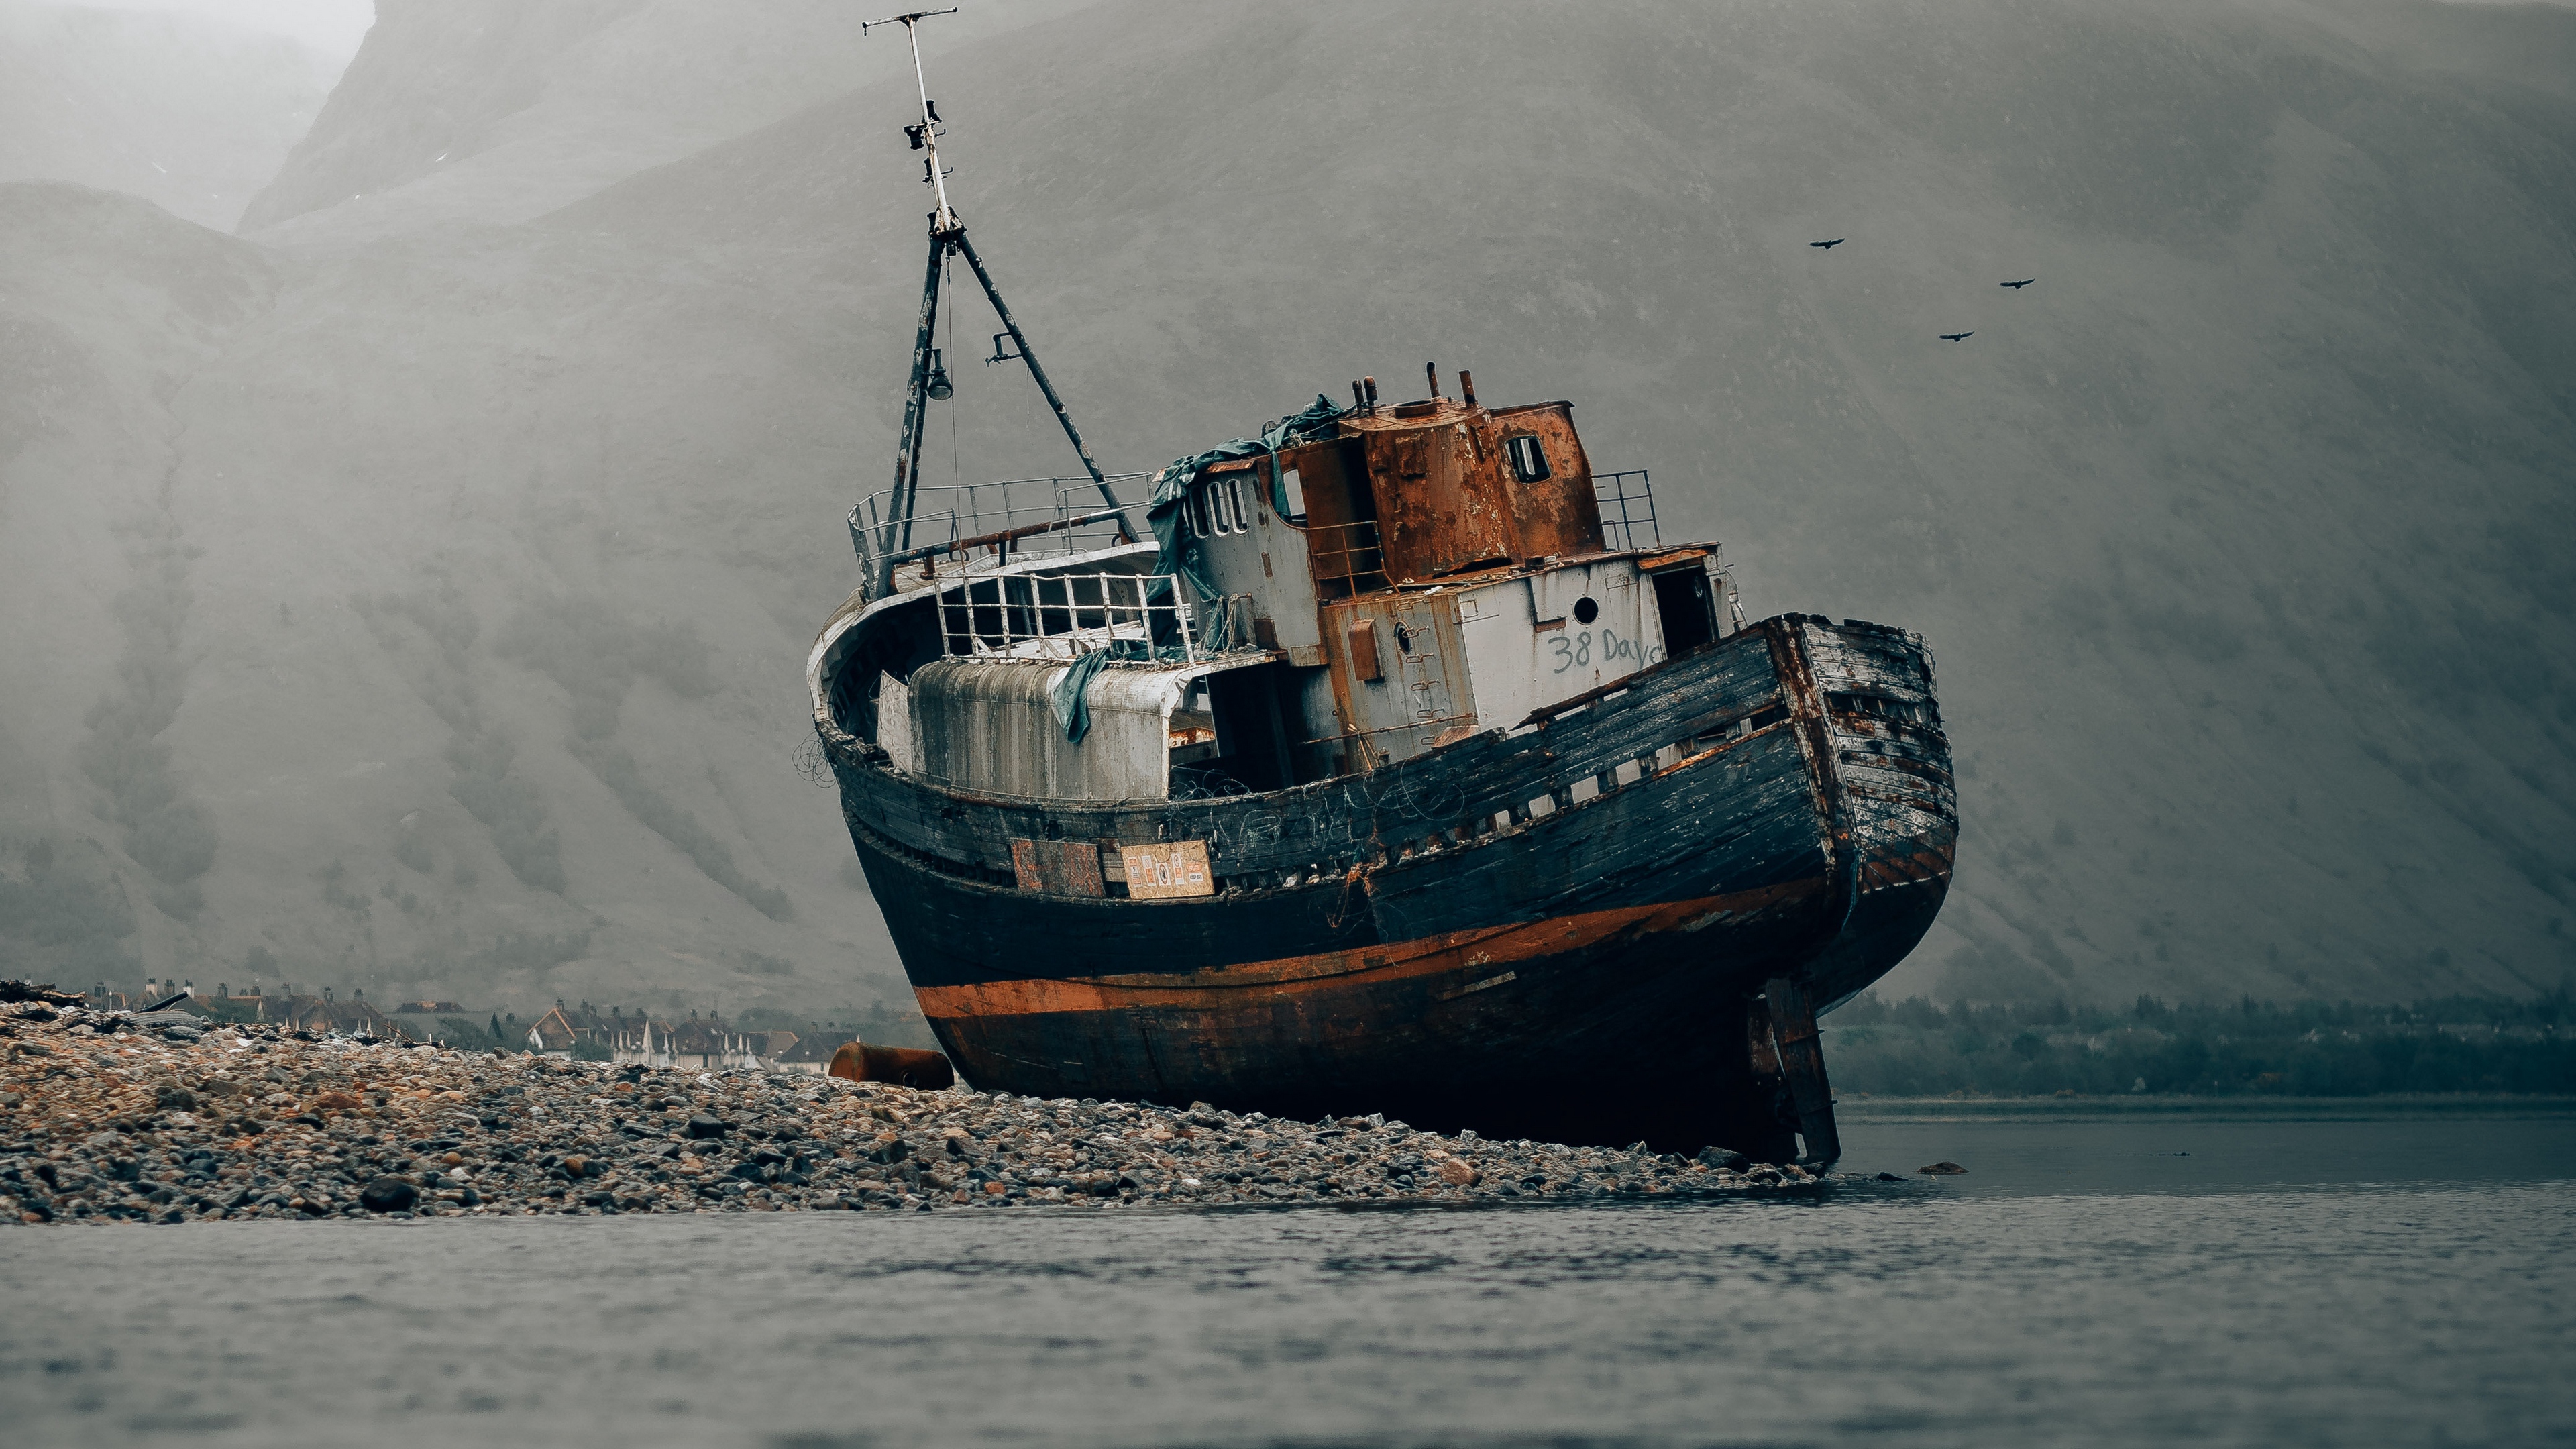 دانلود والپیپر کشتی قدیمی در دریا و هوای ابری فور کی 4k